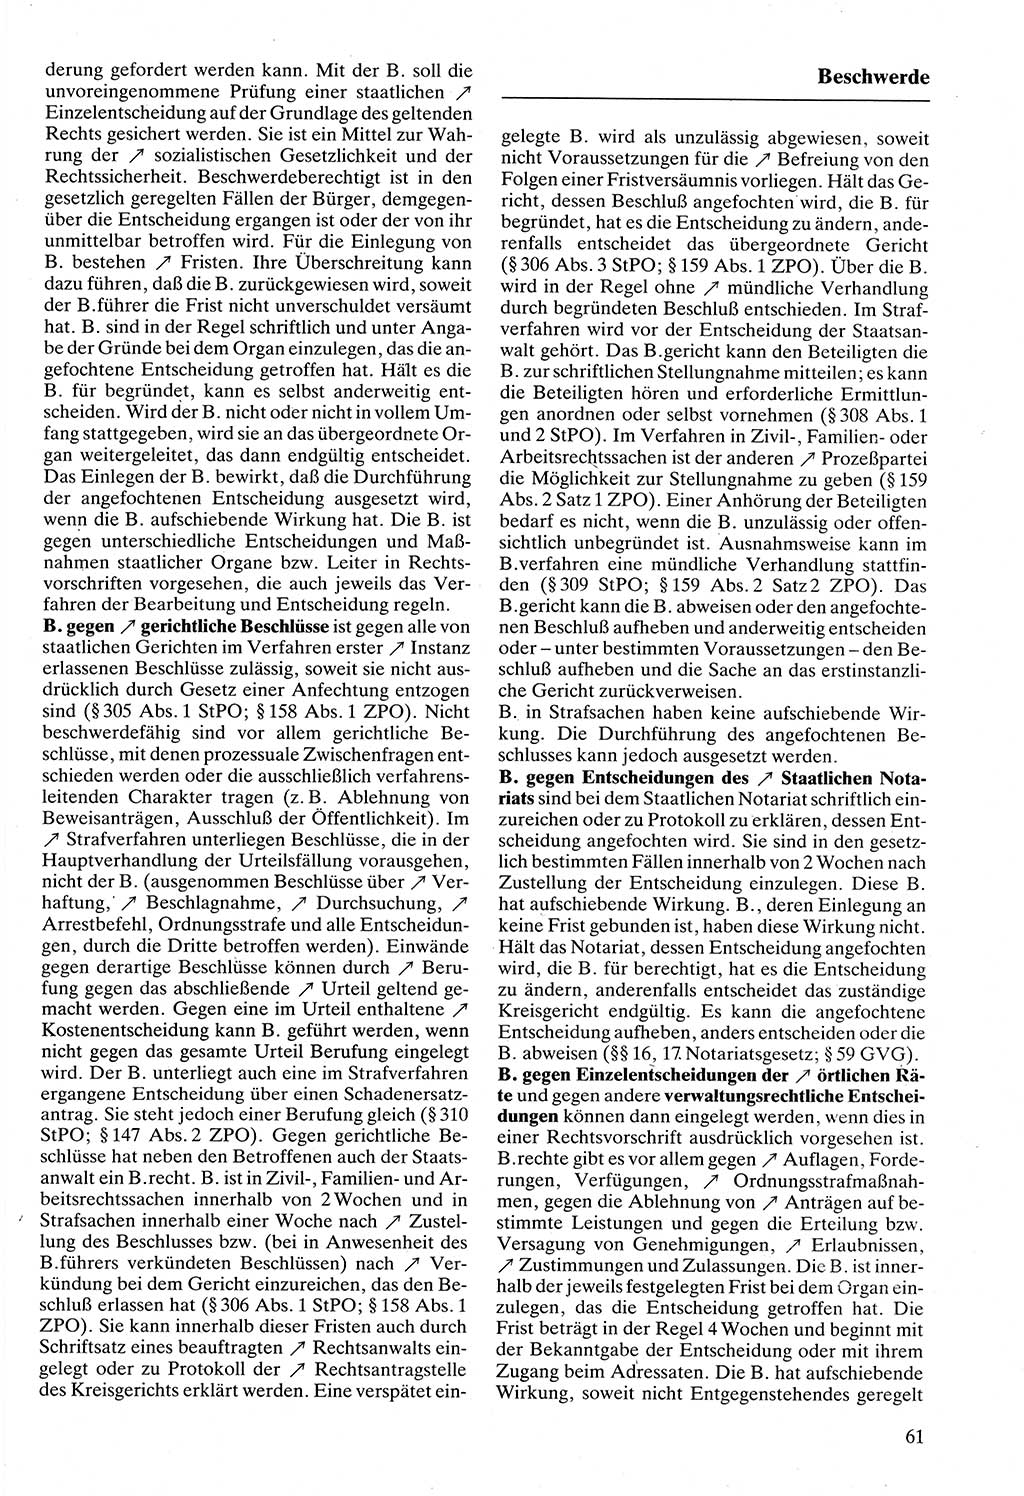 Rechtslexikon [Deutsche Demokratische Republik (DDR)] 1988, Seite 61 (Rechtslex. DDR 1988, S. 61)